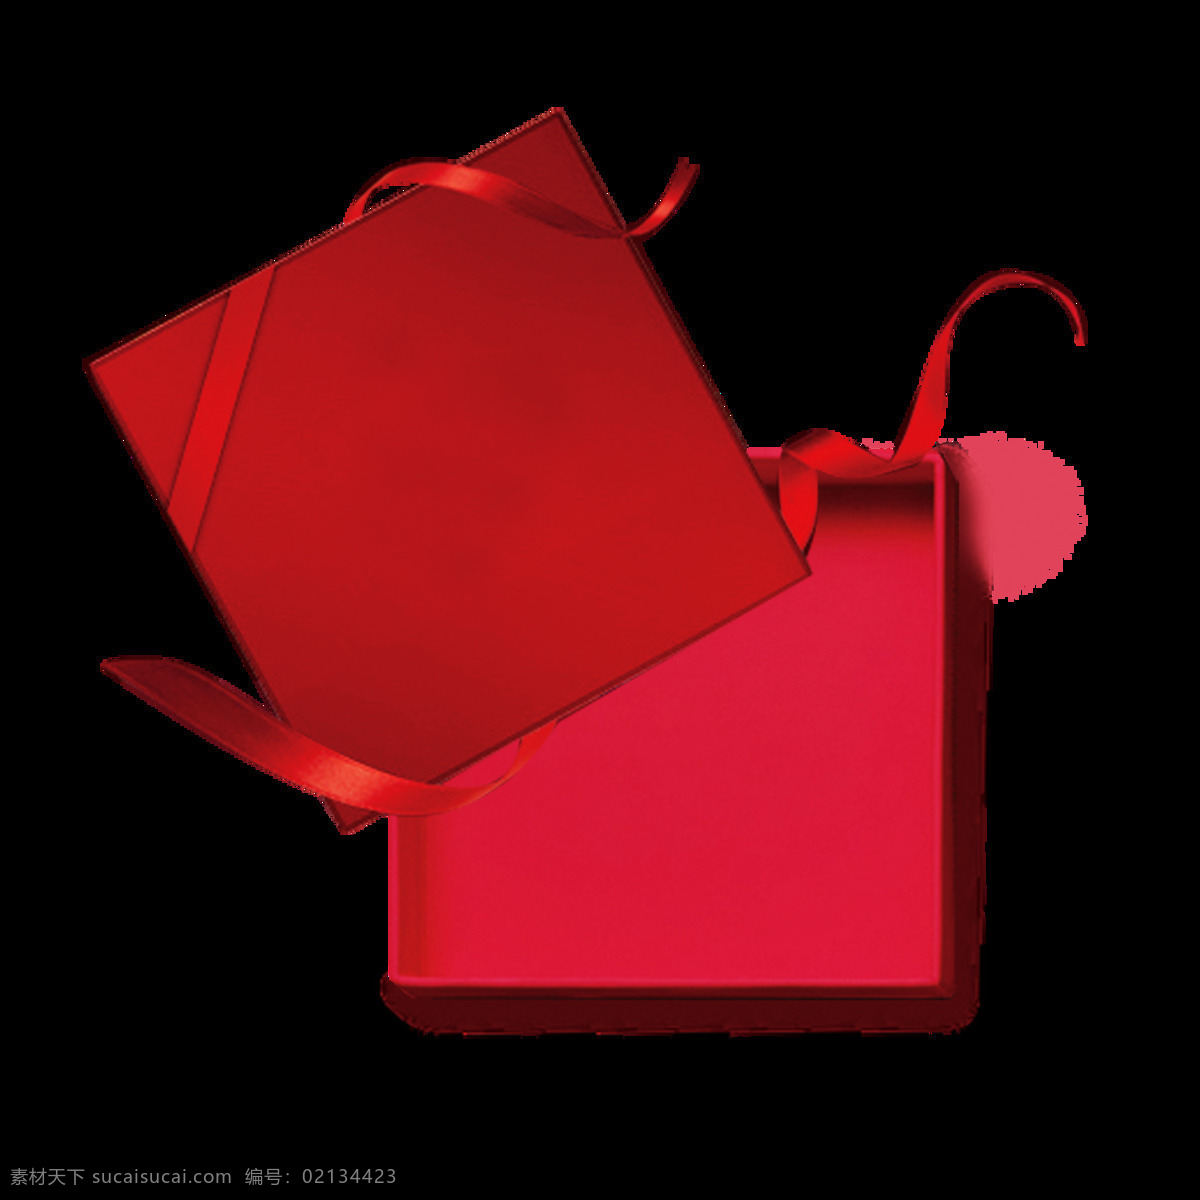 打开 情人节 礼盒 礼盒图片素材 盒子矢量图 礼物 促销海报元素 红包 彩带 卡通礼盒 礼品包装 节日礼盒 礼品礼盒 打开礼盒 情人节礼盒 红色礼品盒